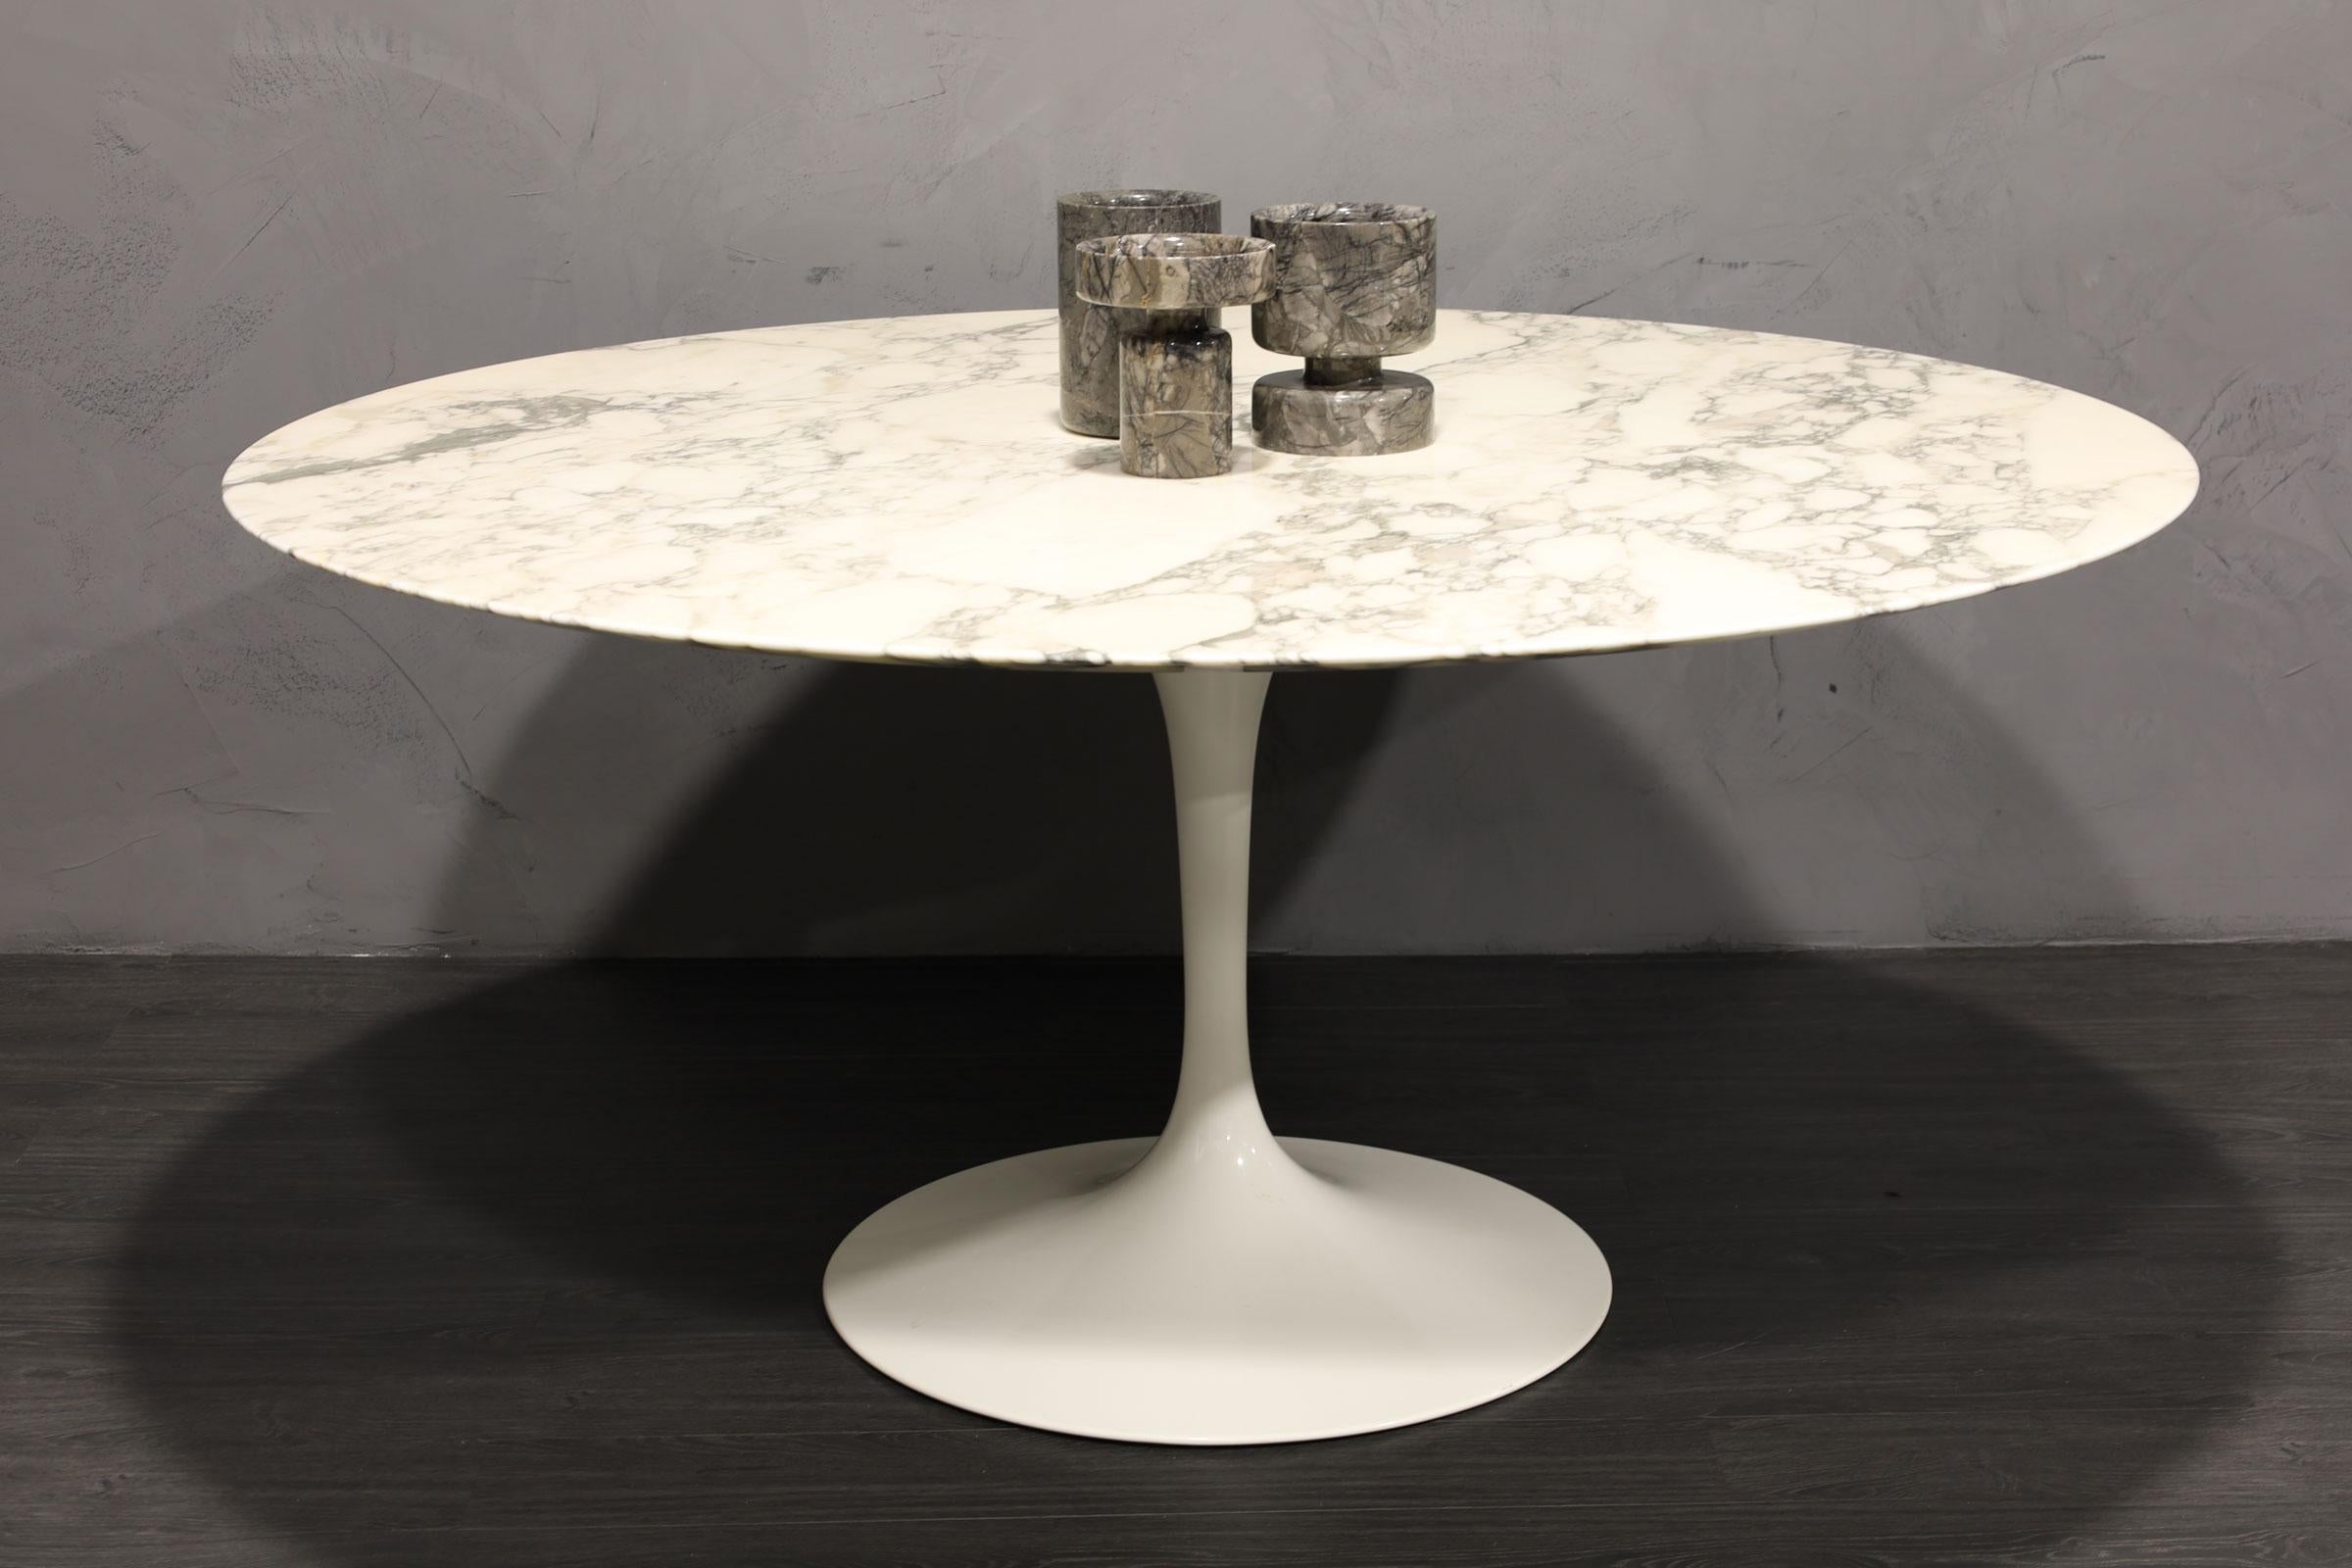 Une table tulipe d'Eero Saarinen pour Knoll très légèrement utilisée. Dans un beau marbre Arabescato avec une base blanche. Il est prêt à être utilisé immédiatement ! L'image donne un aspect jaunâtre à la table, mais elle n'est pas du tout jaune.